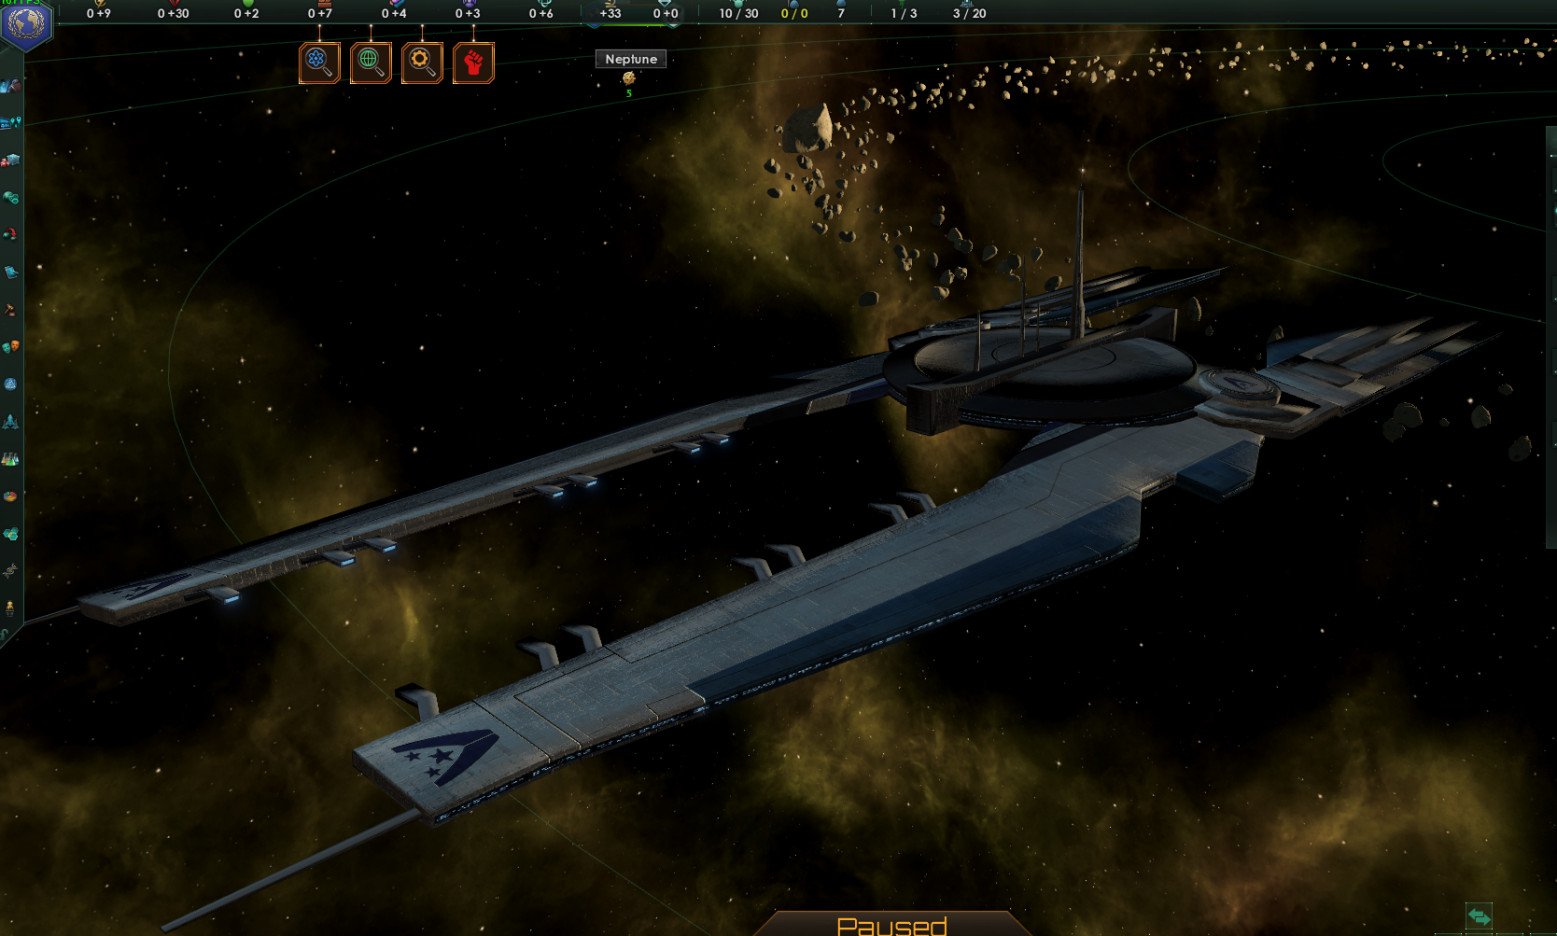 alliance ship rendered in stellaris